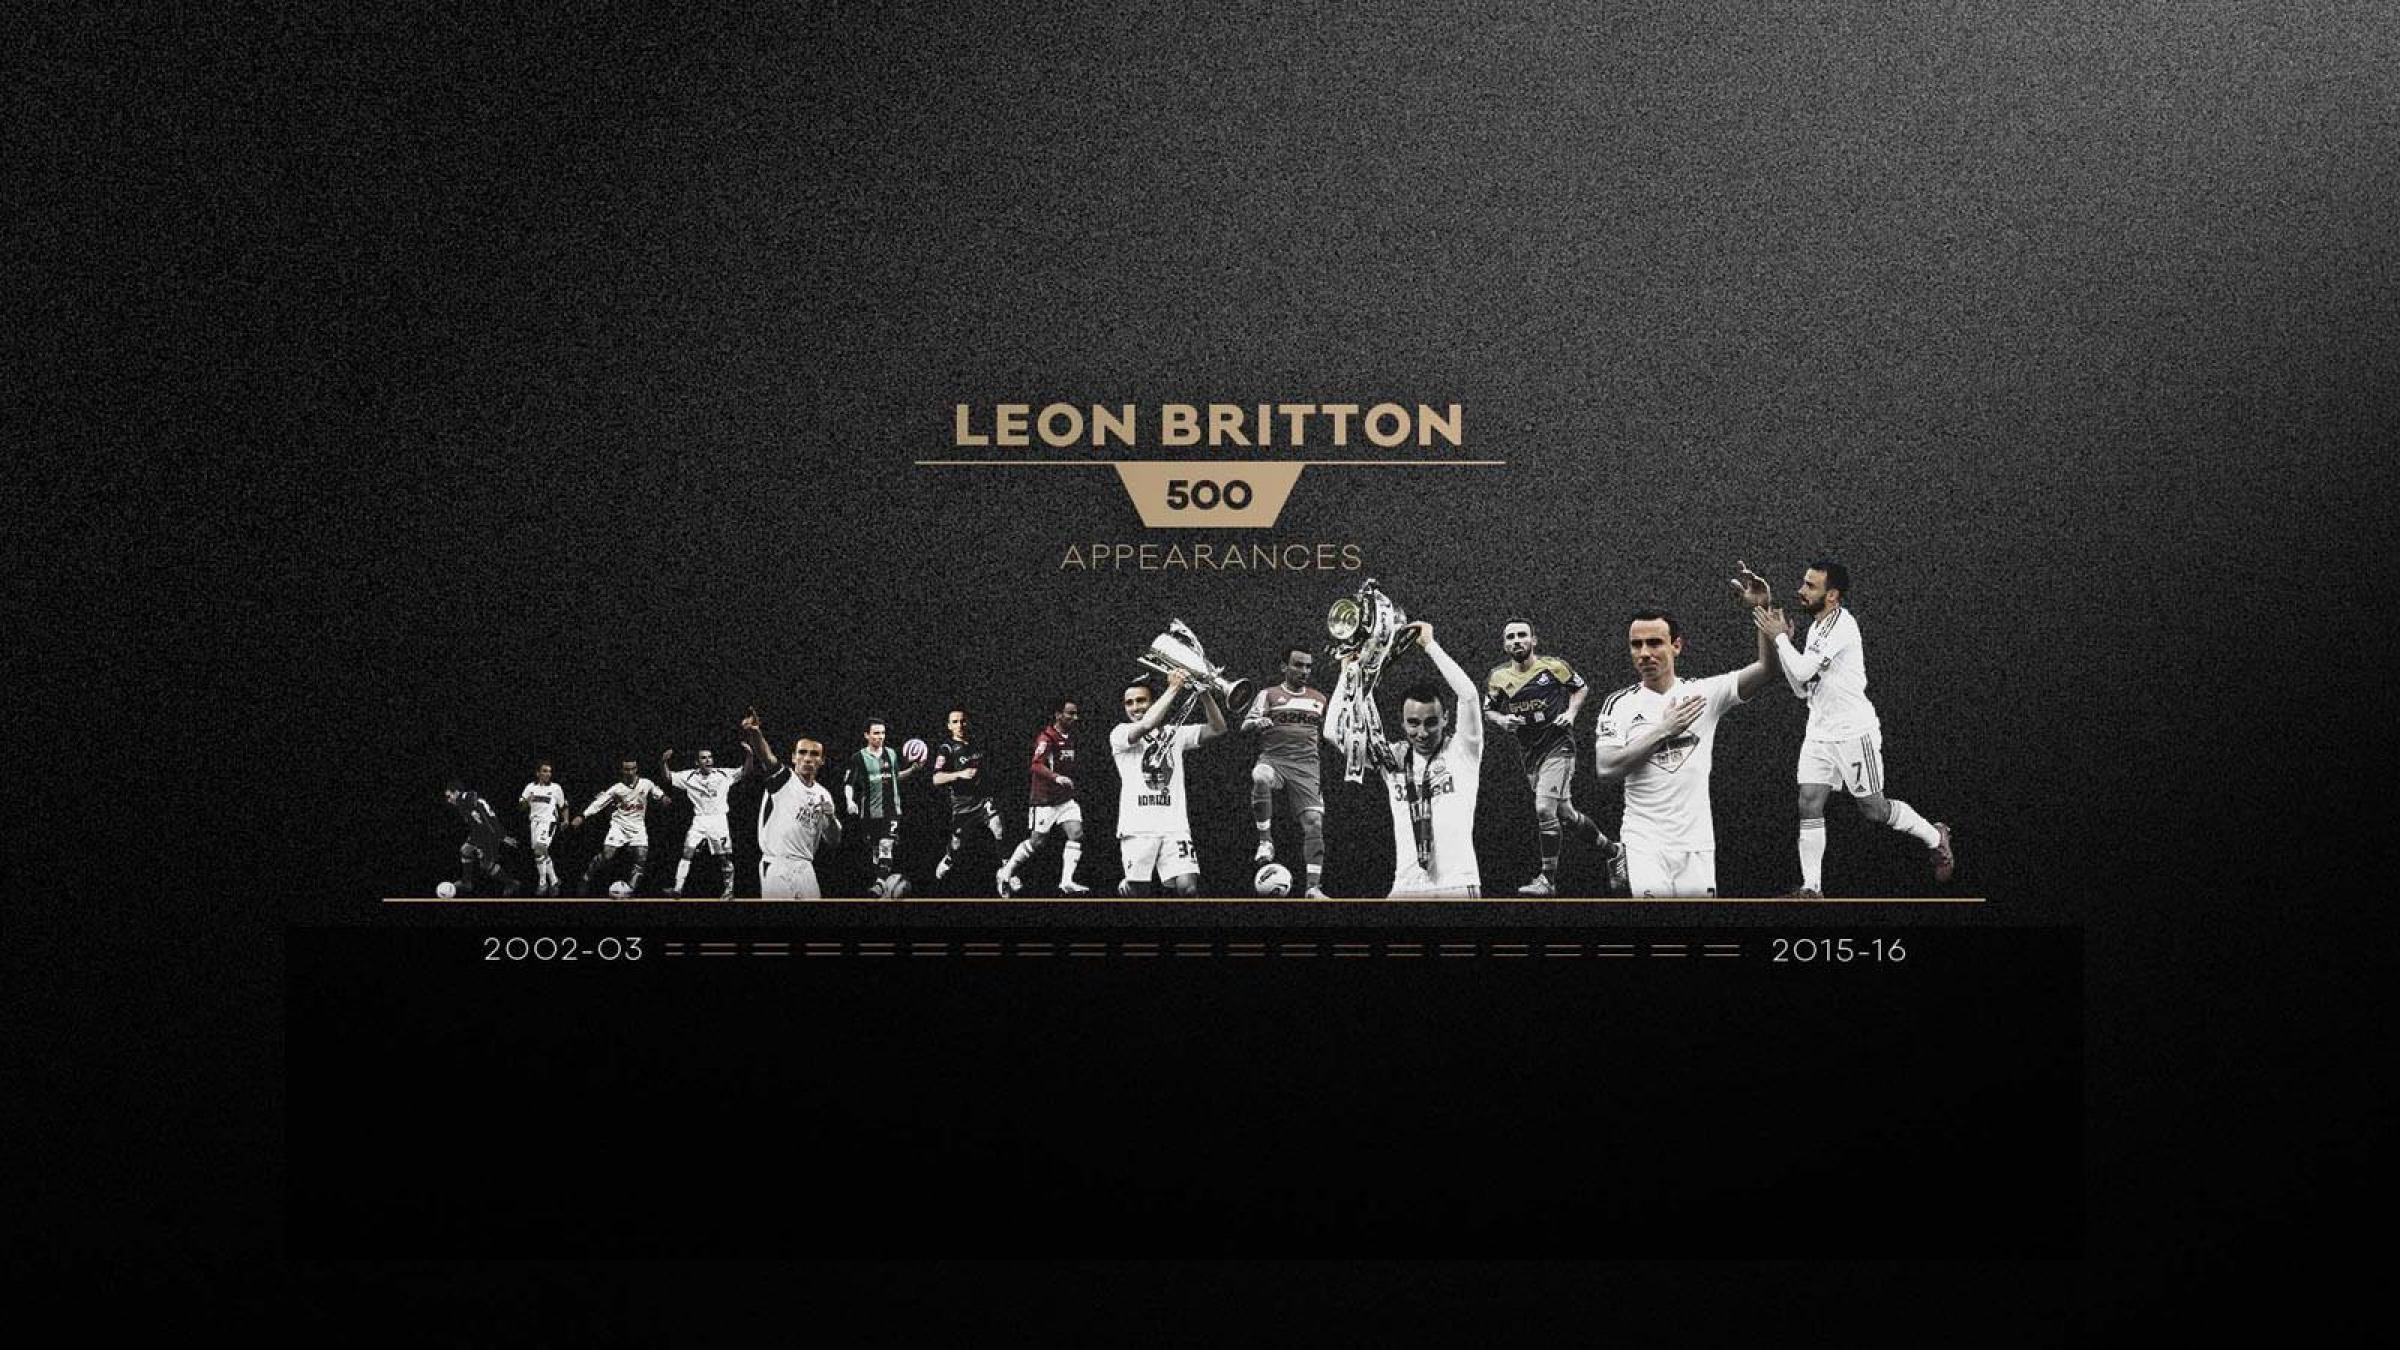 2400x1350 WALLPAPER WEDNESDAY: Swansea City midfielder Leon Britton